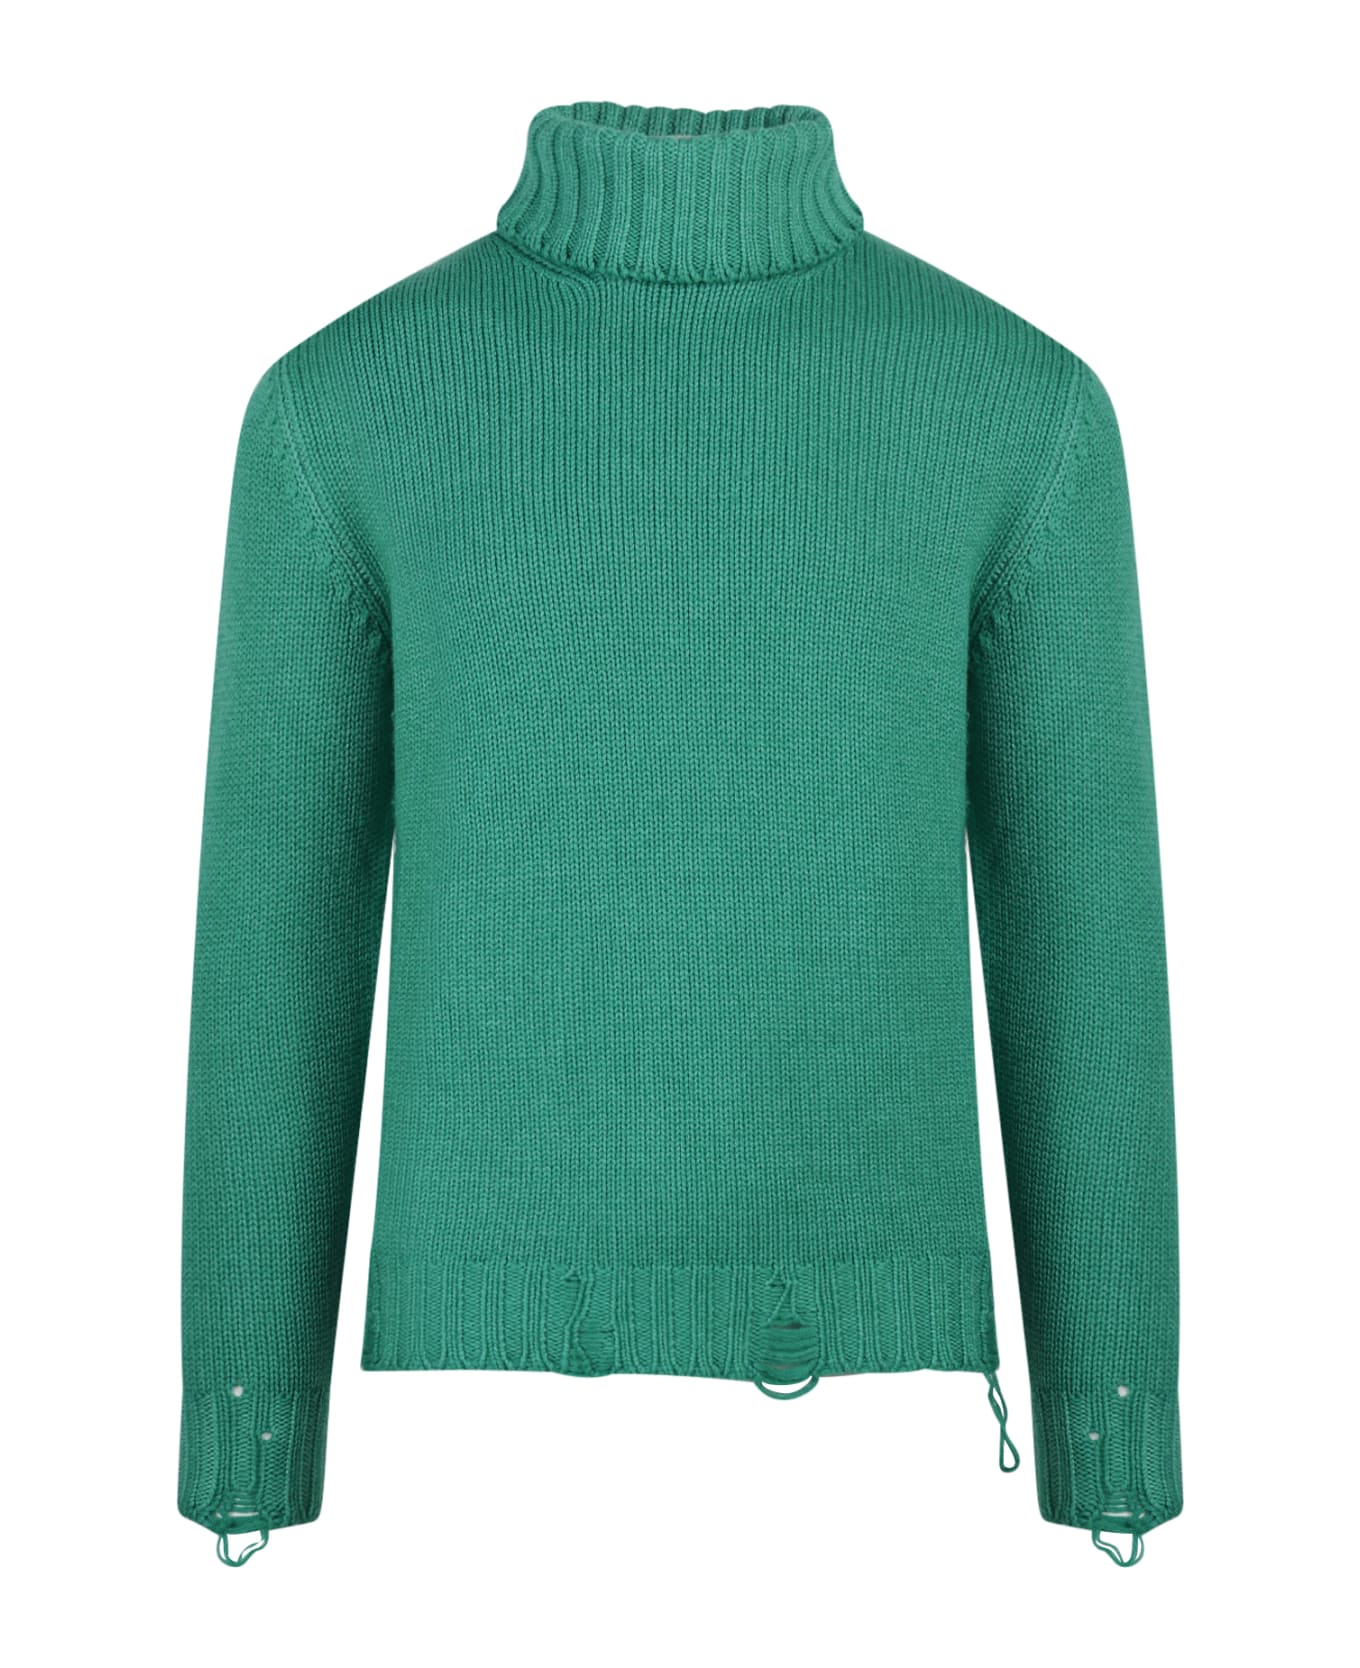 PT Torino Sweater - Green ニットウェア